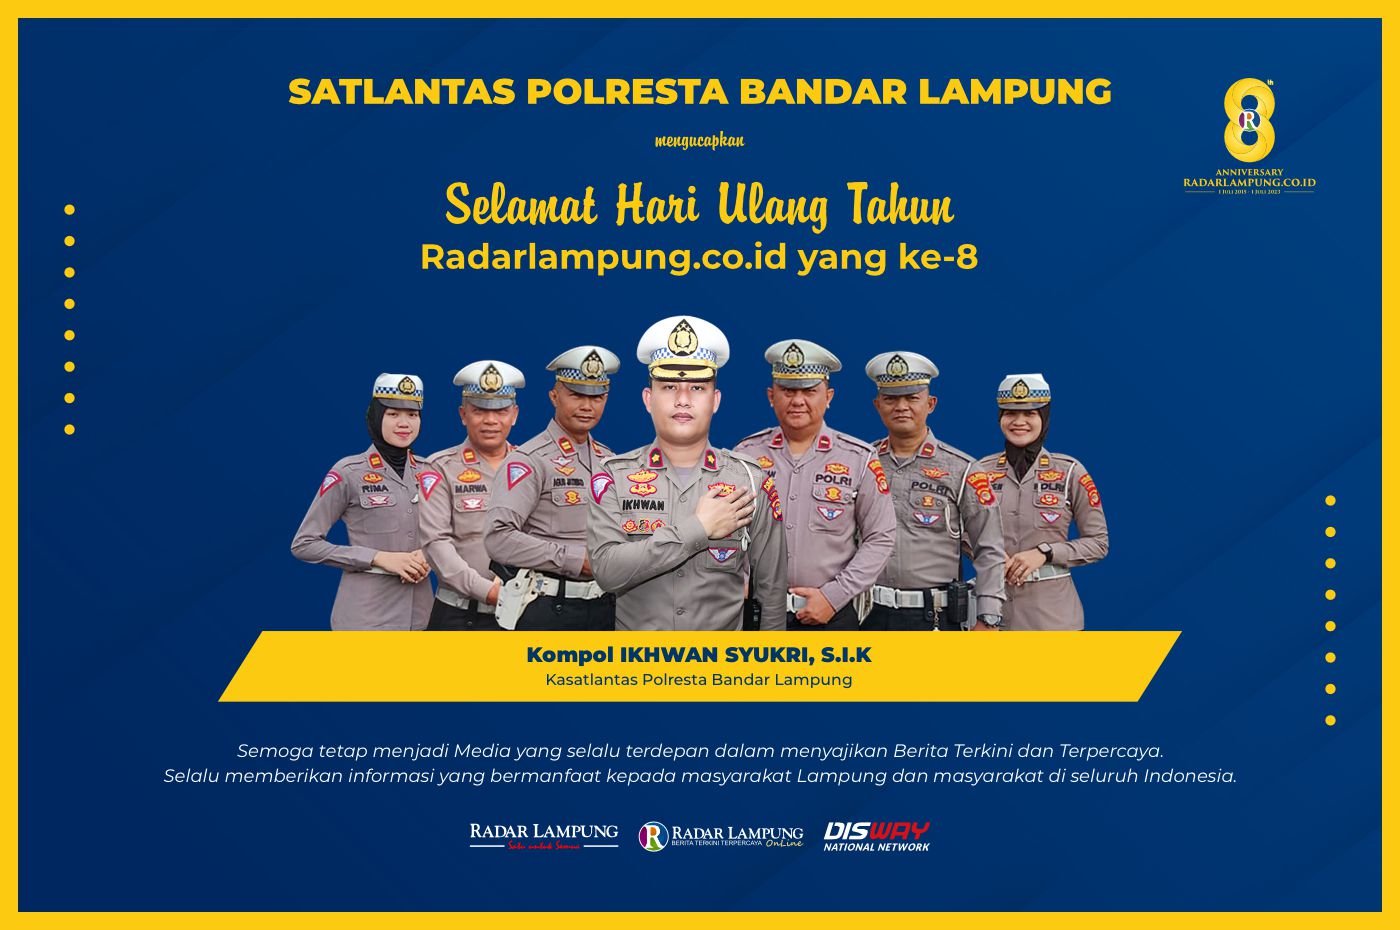 Satlantas Polresta Bandar Lampung: Selamat Hari Ulang Tahun ke-8 Radar Lampung Online